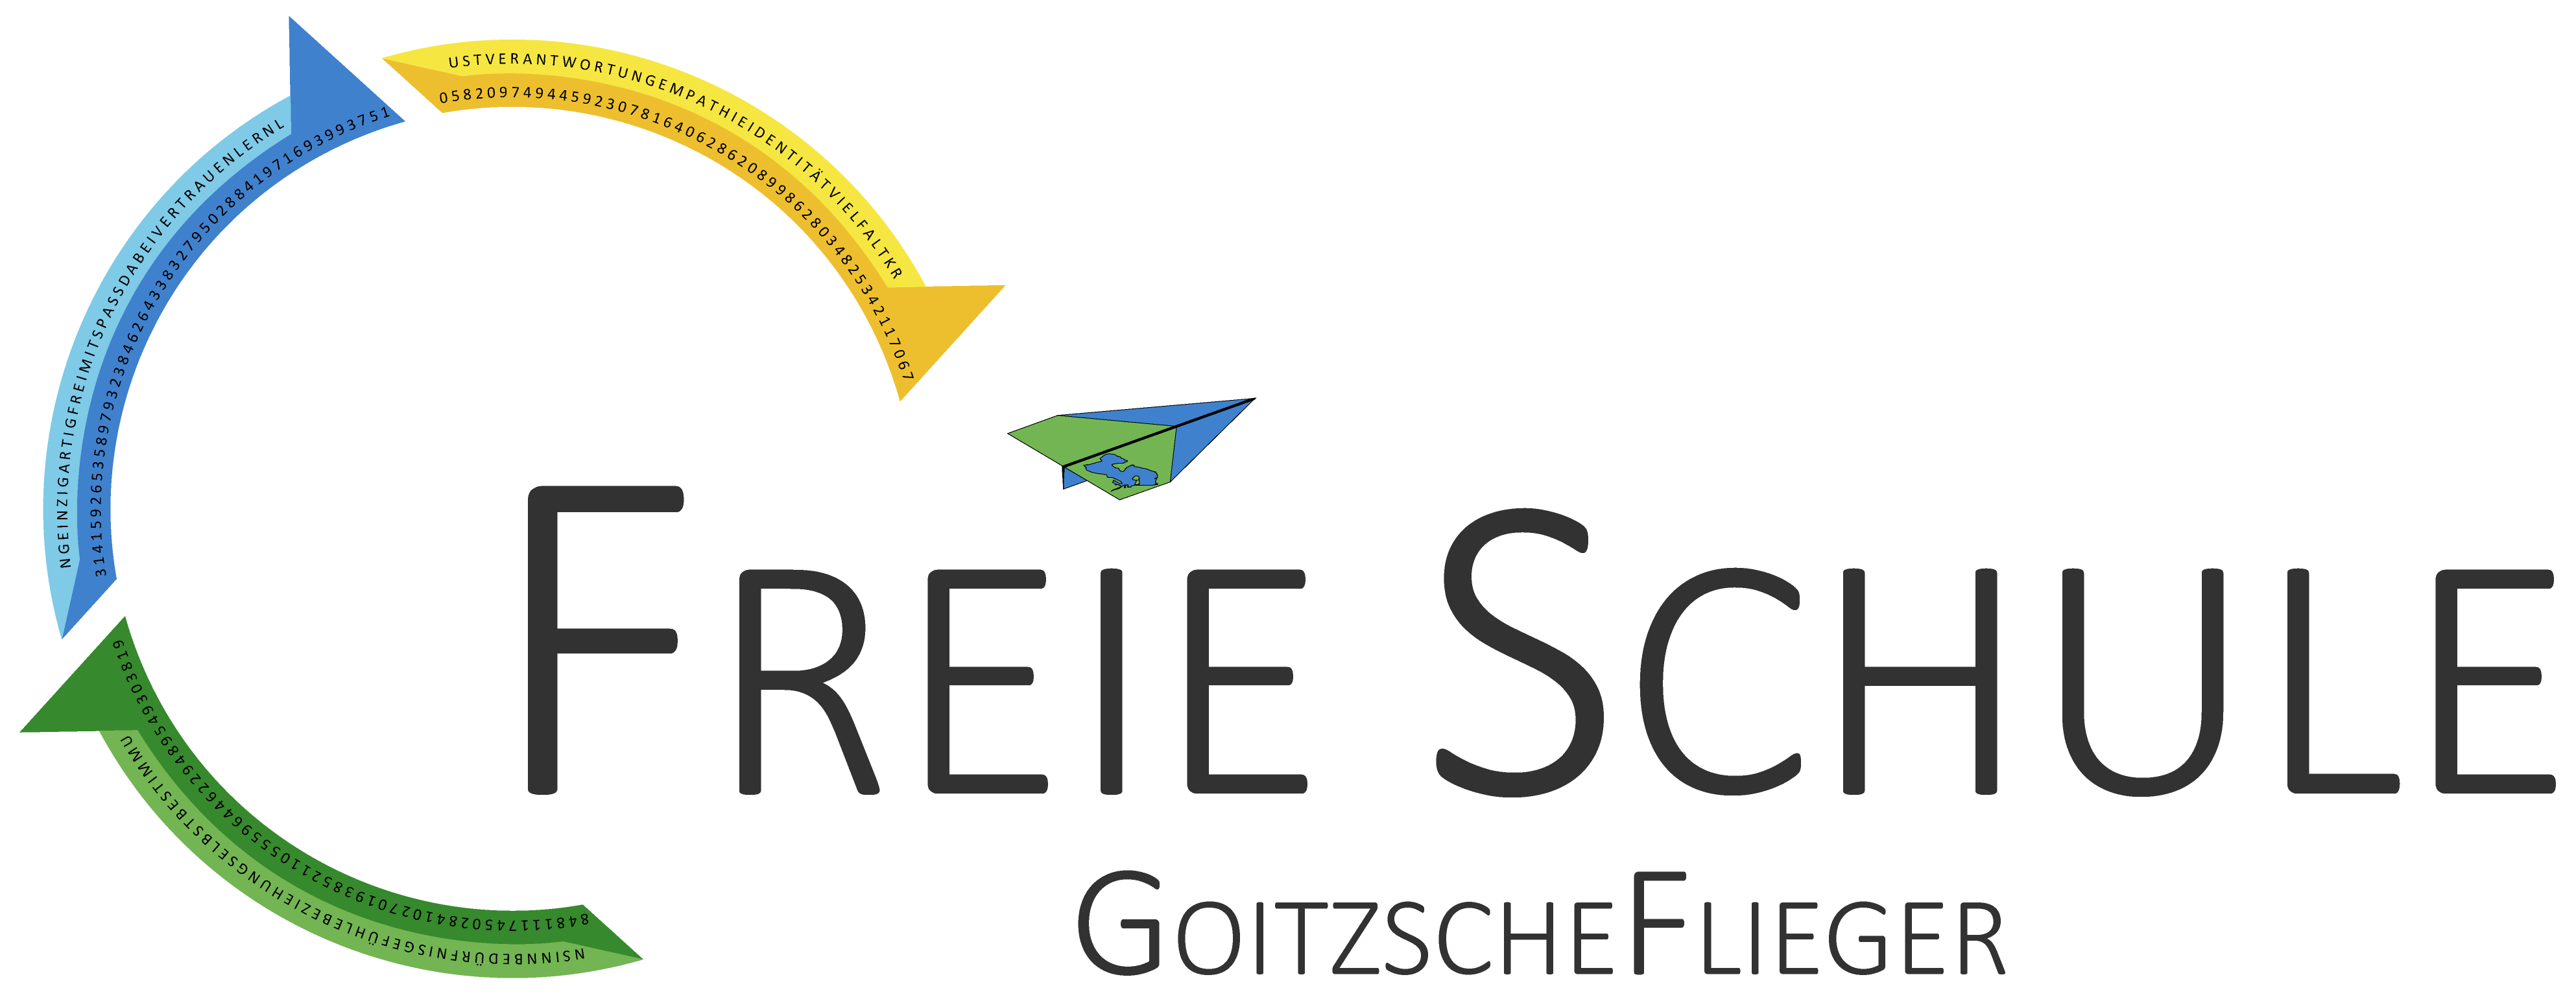 Freie Schule GoitzscheFlieger Goitzsche Flieger Siliva eV siliva.de fs-gf.de fsgf